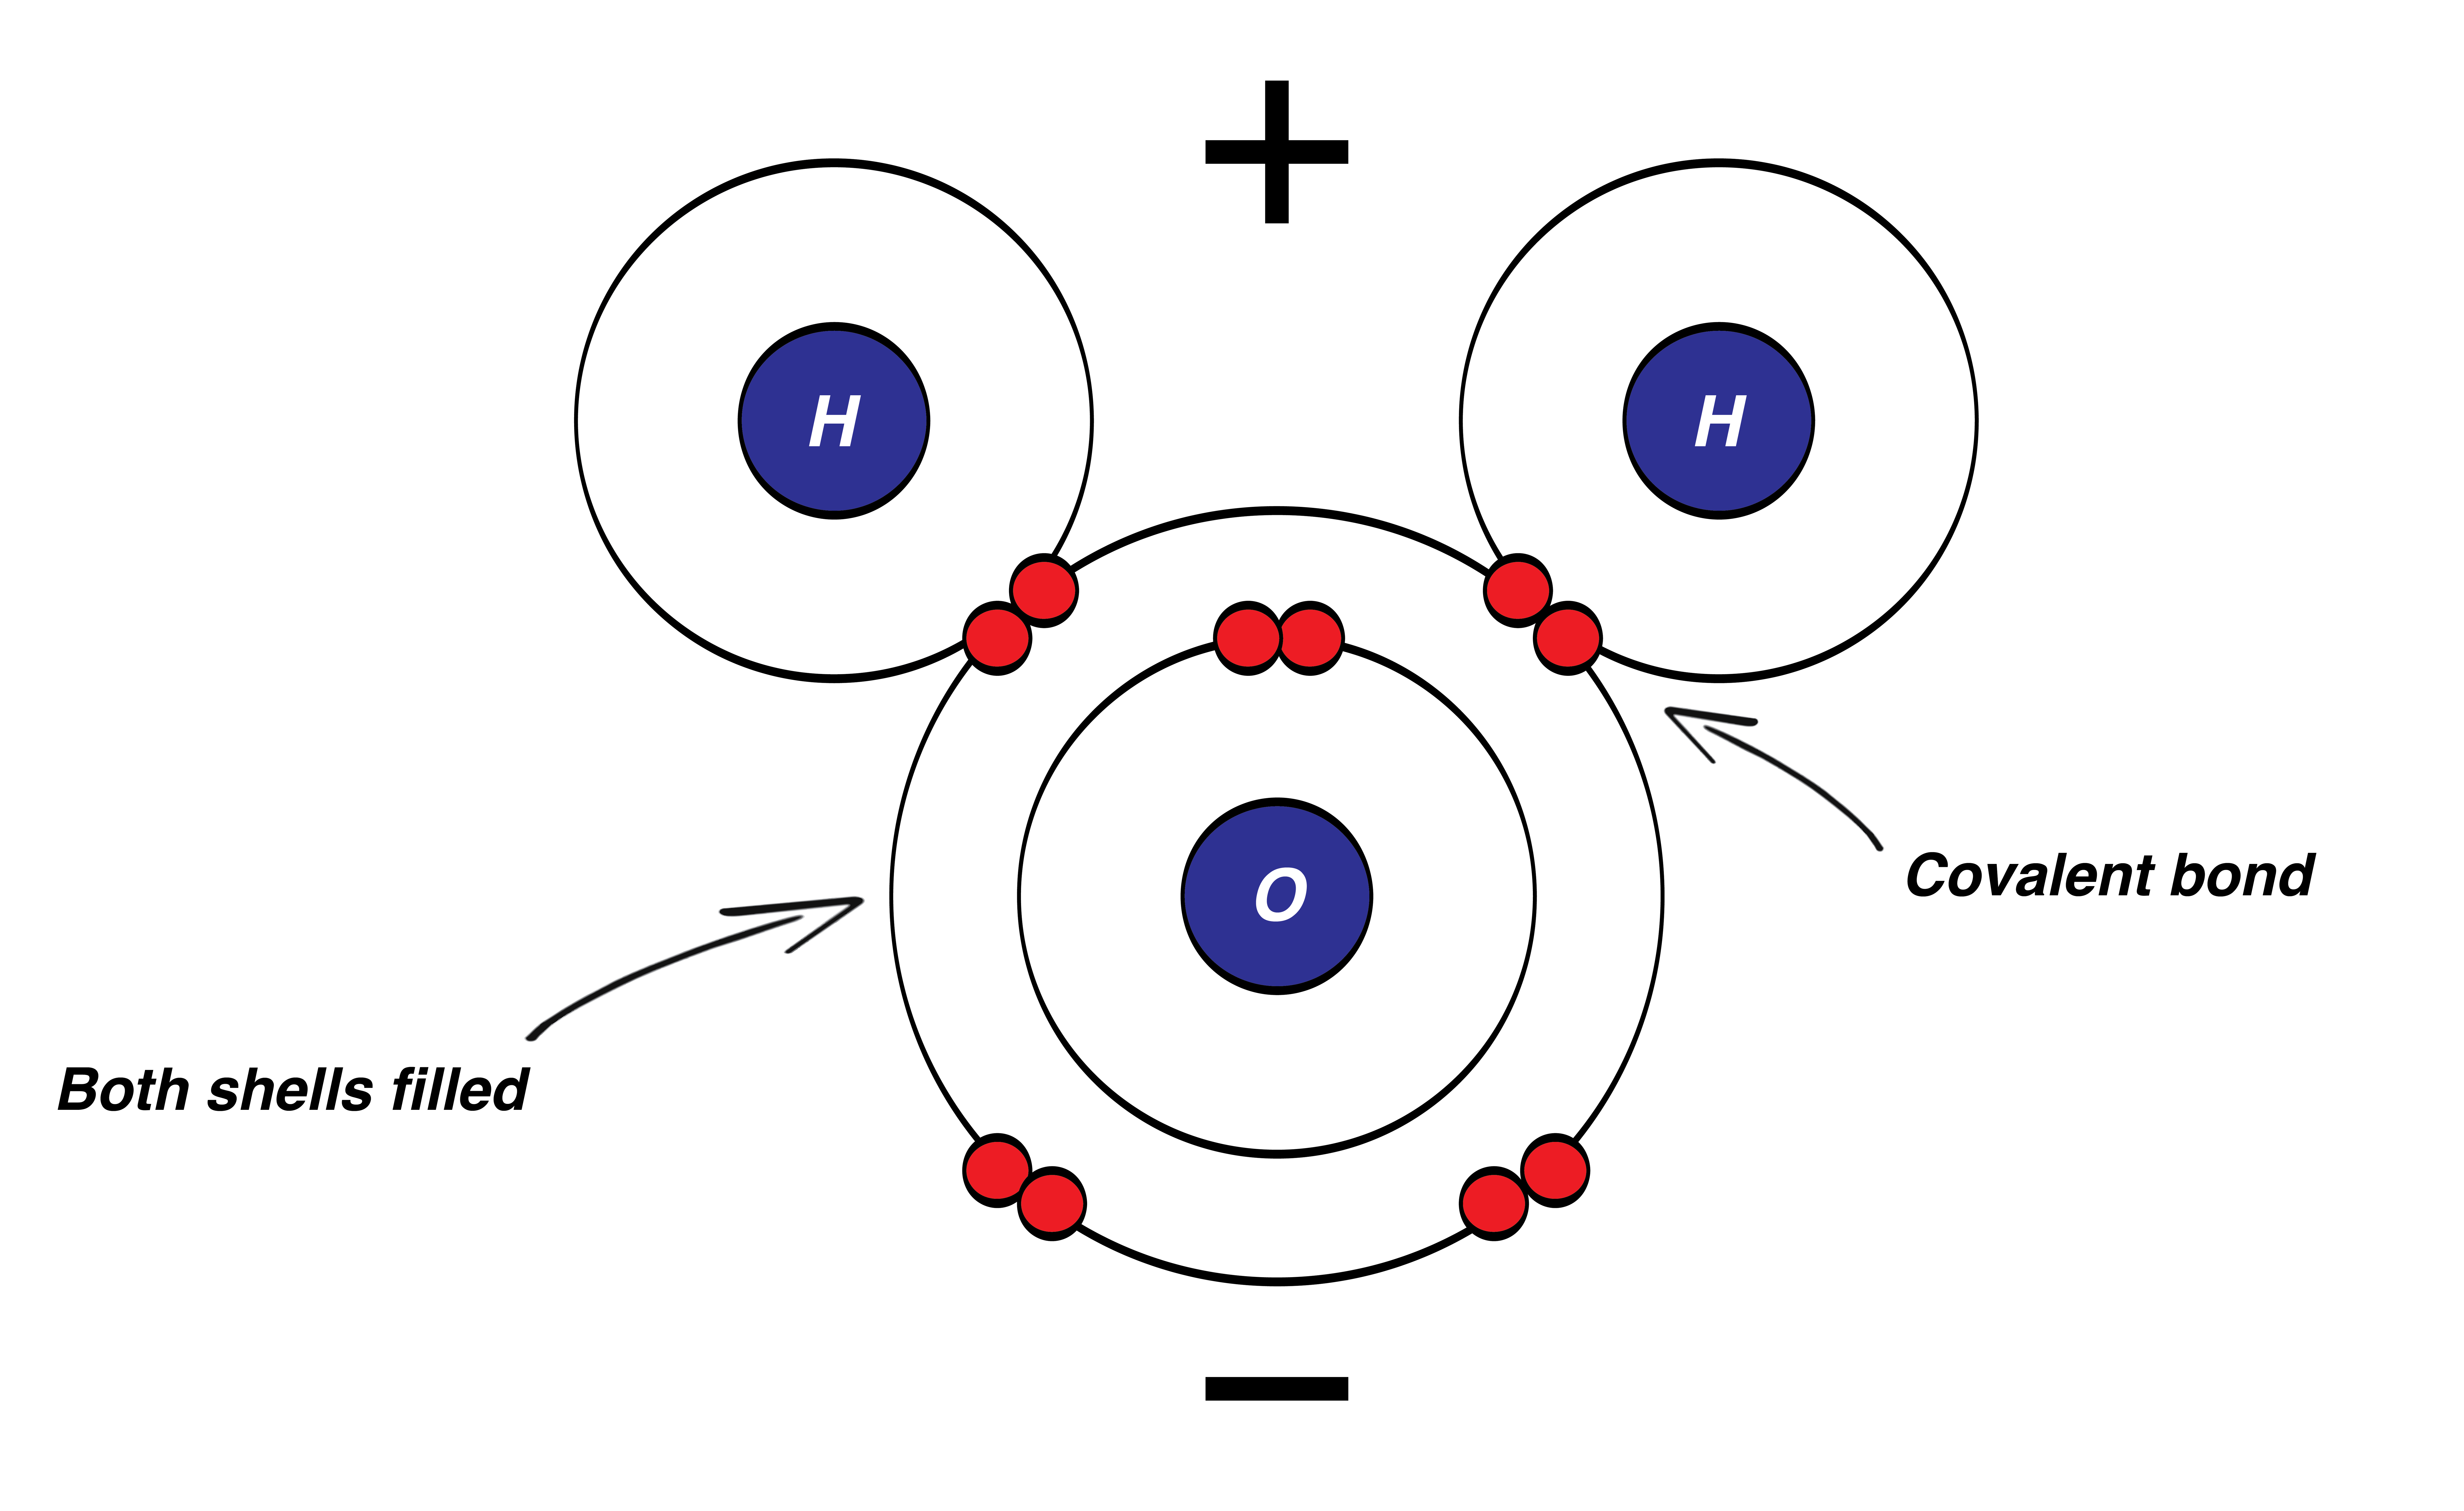 bohr rutherford diagram for nitrogen